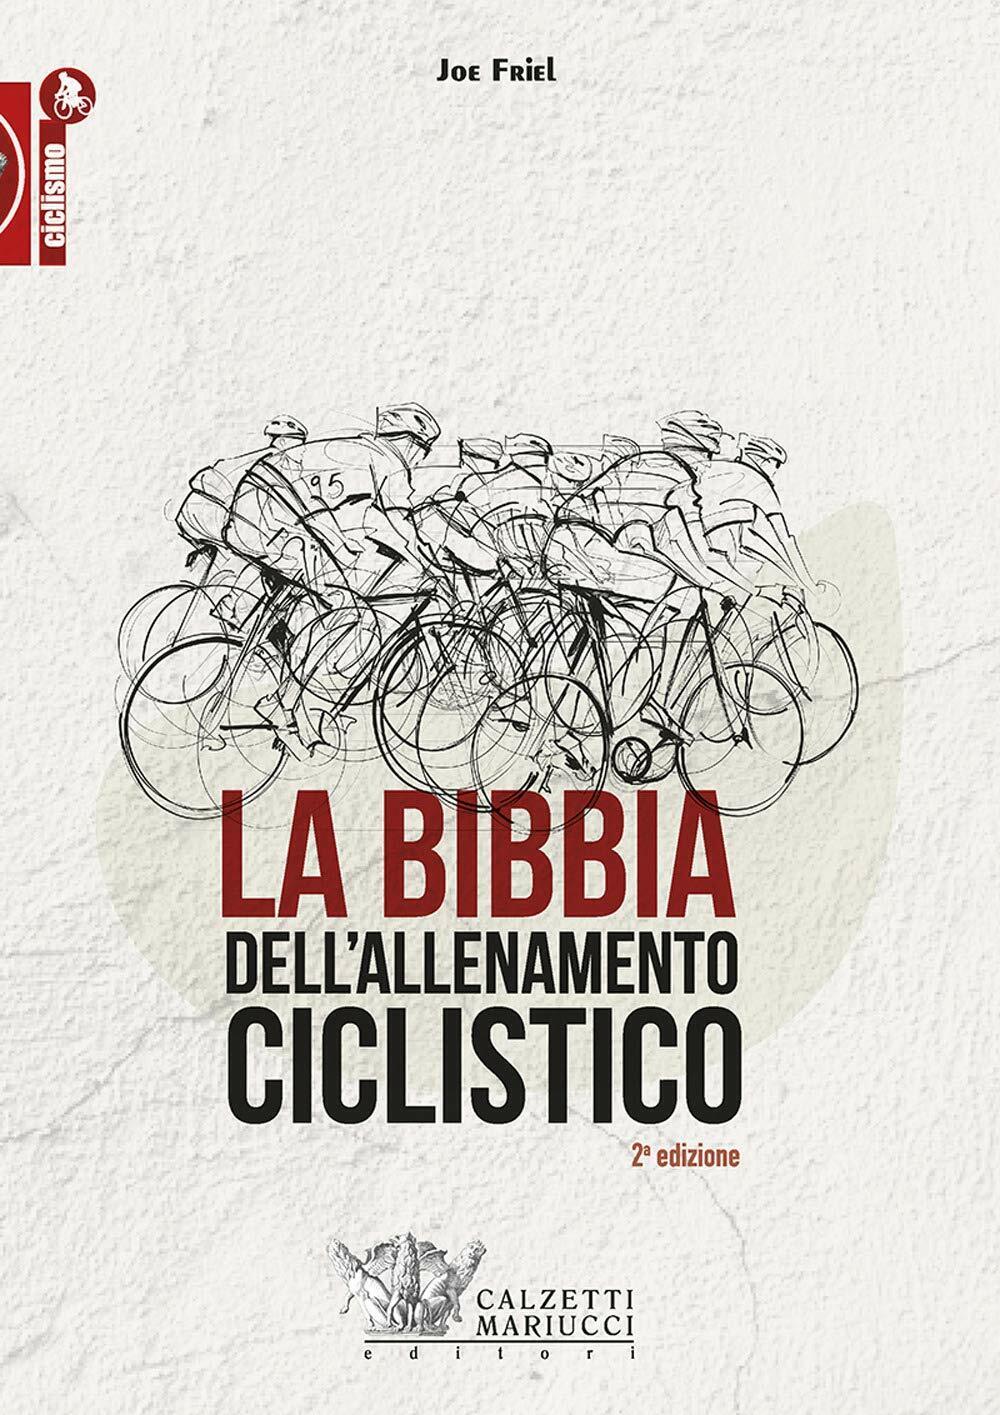 La bibbia dell'allenamento ciclistico - Joe Friel - Calzetti Mariucci, 2019